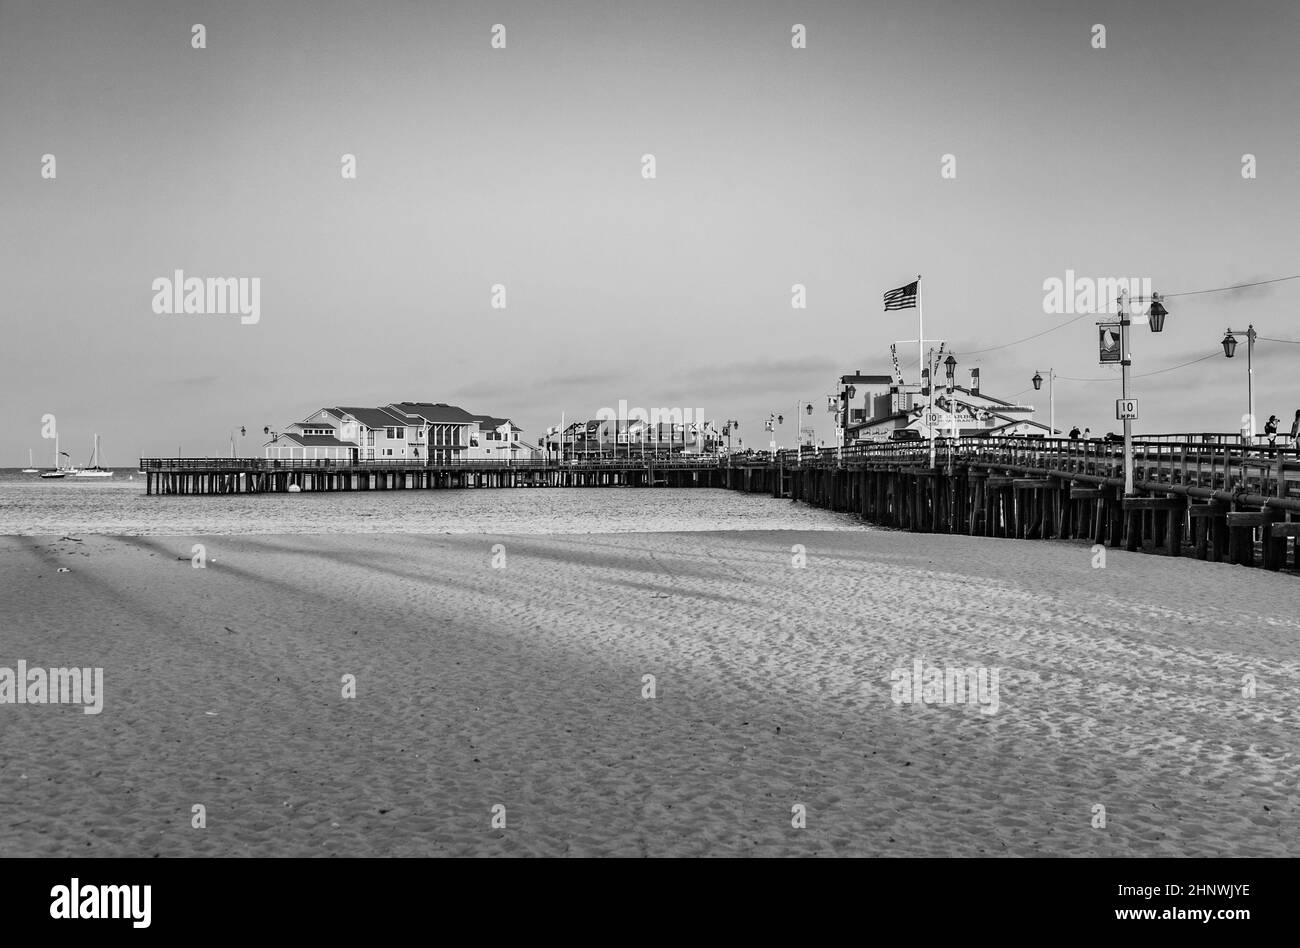 scenic pier in Santa Barbara in sunset Stock Photo